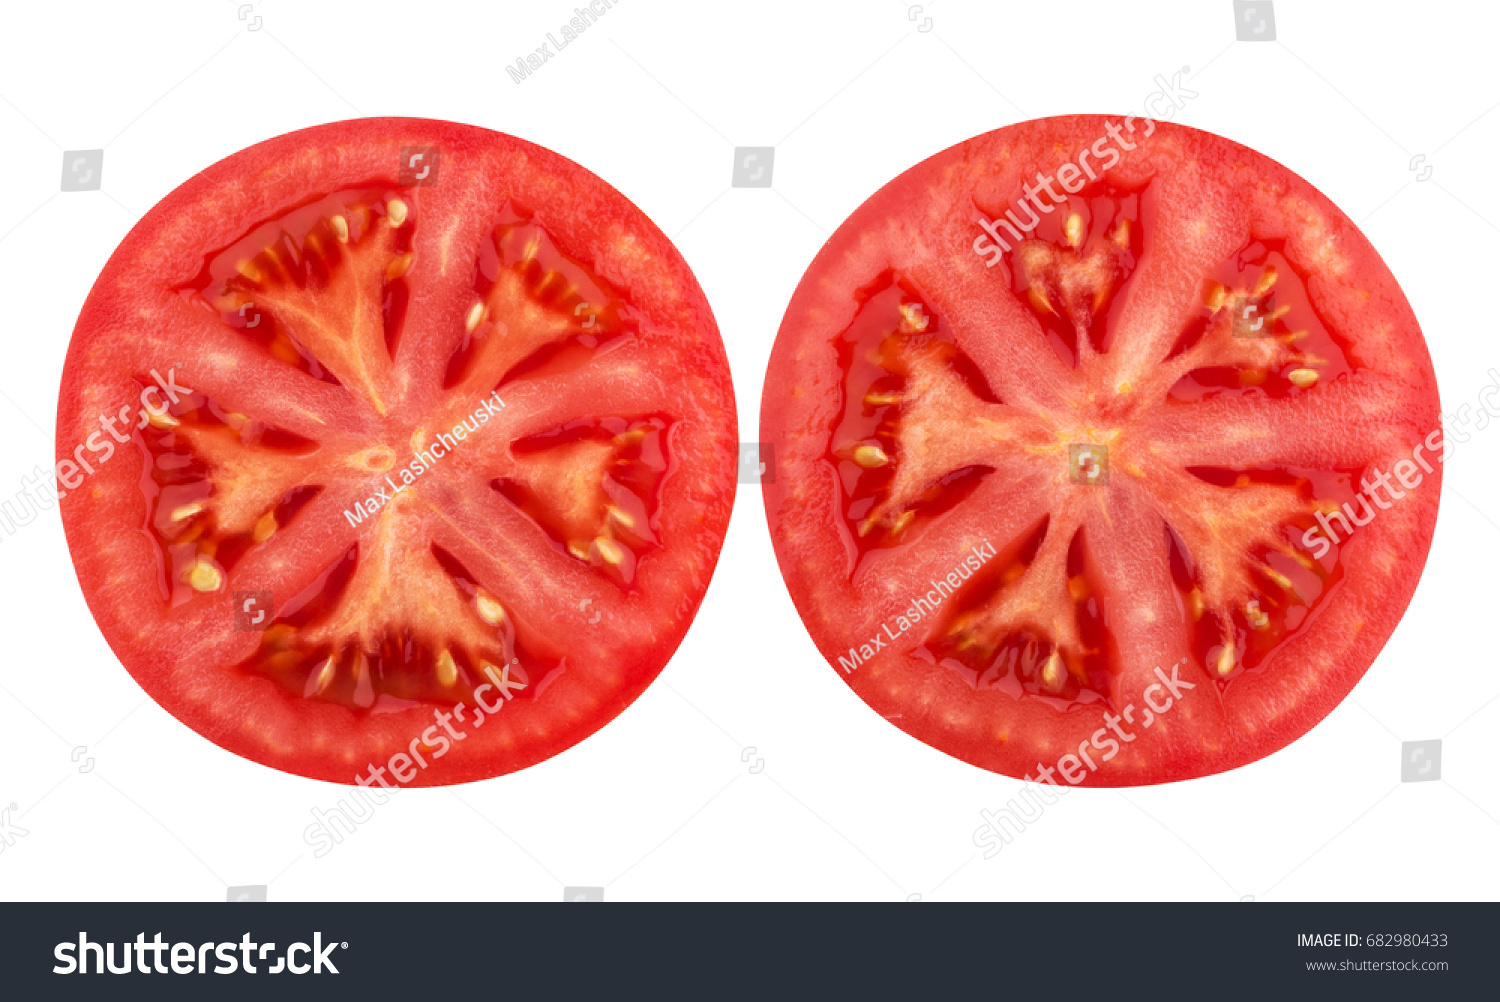 Ломтик помидора на белом фоне